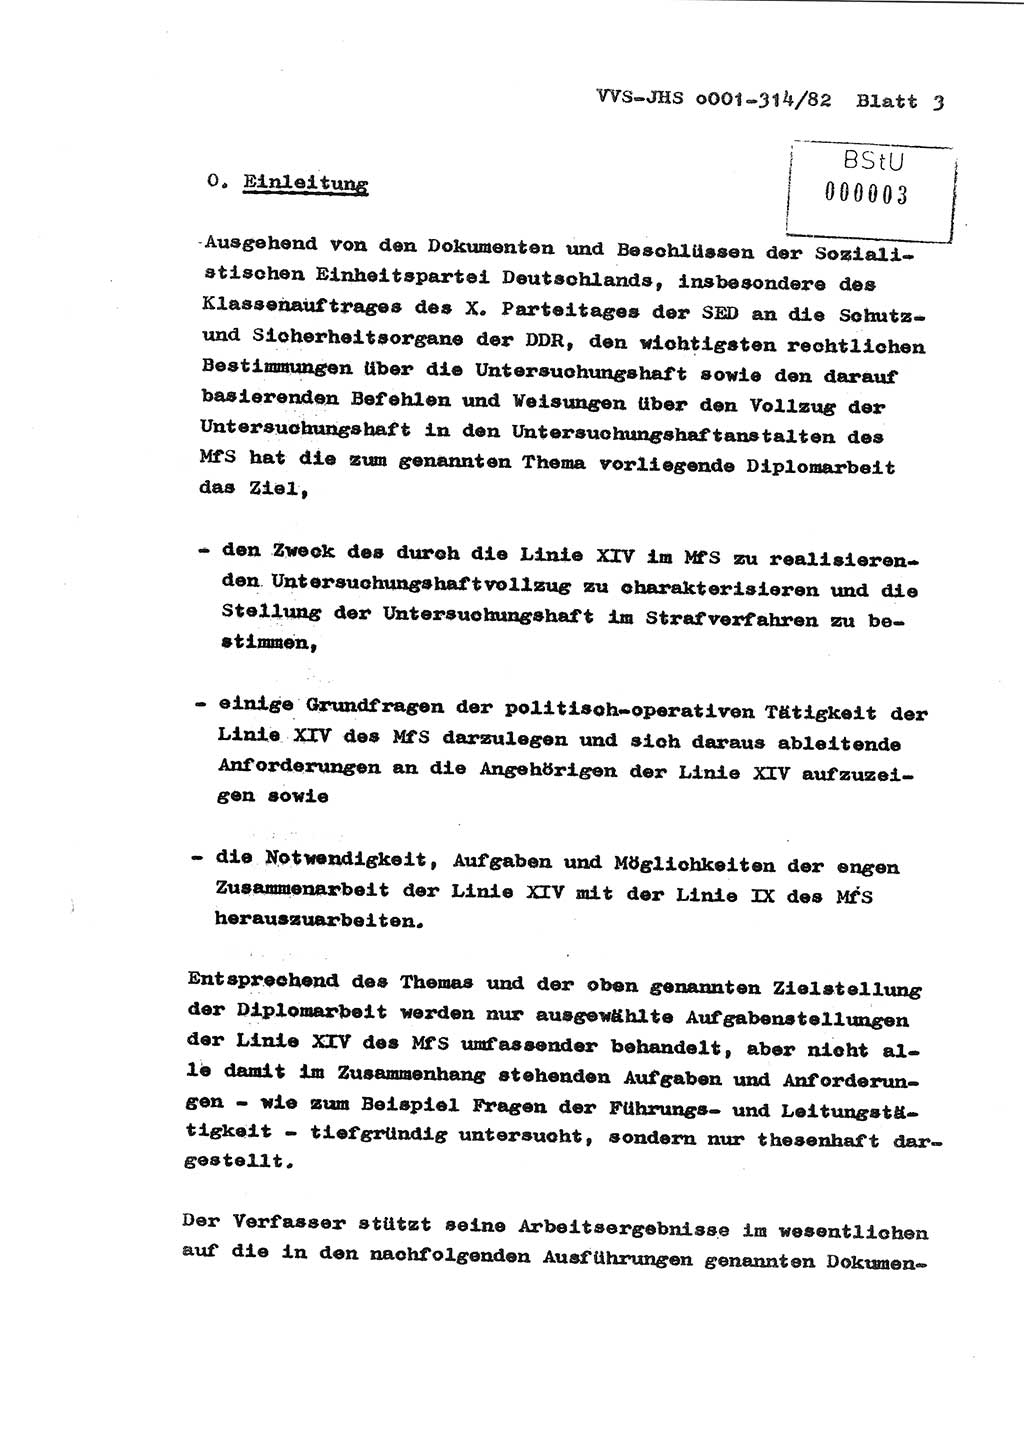 Diplomarbeit Hauptmann Wolfgang Schröder (Abt. ⅩⅣ), Ministerium für Staatssicherheit (MfS) [Deutsche Demokratische Republik (DDR)], Juristische Hochschule (JHS), Vertrauliche Verschlußsache (VVS) o001-314/82, Potsdam 1982, Seite 3 (Dipl.-Arb. MfS DDR JHS VVS o001-314/82 1982, S. 3)